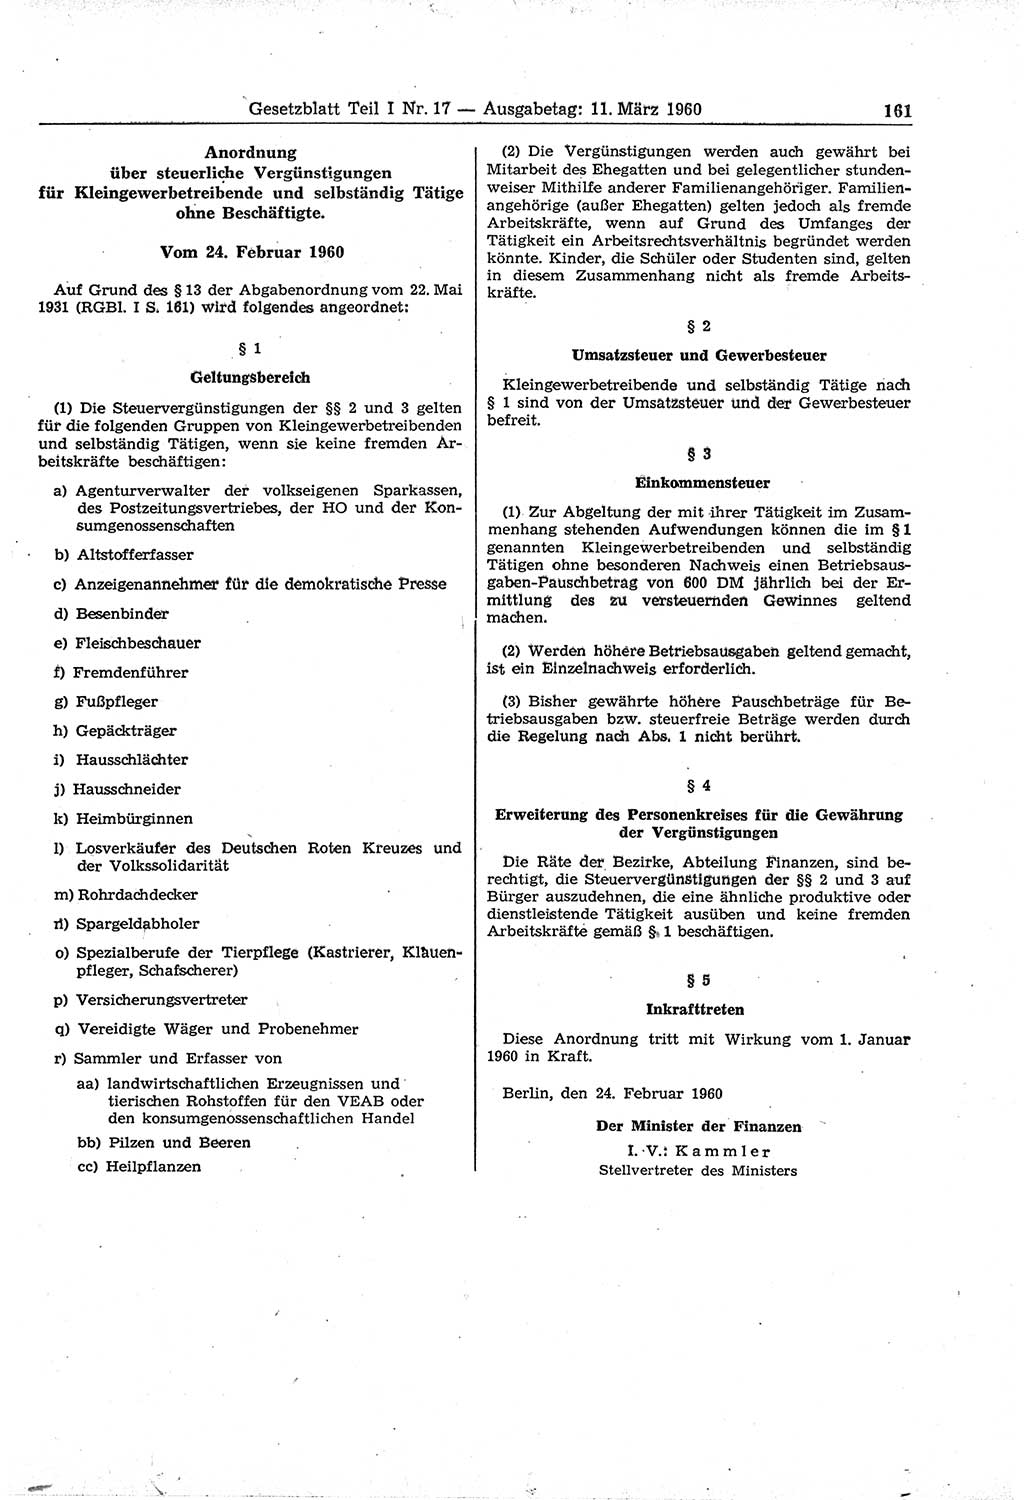 Gesetzblatt (GBl.) der Deutschen Demokratischen Republik (DDR) Teil Ⅰ 1960, Seite 161 (GBl. DDR Ⅰ 1960, S. 161)